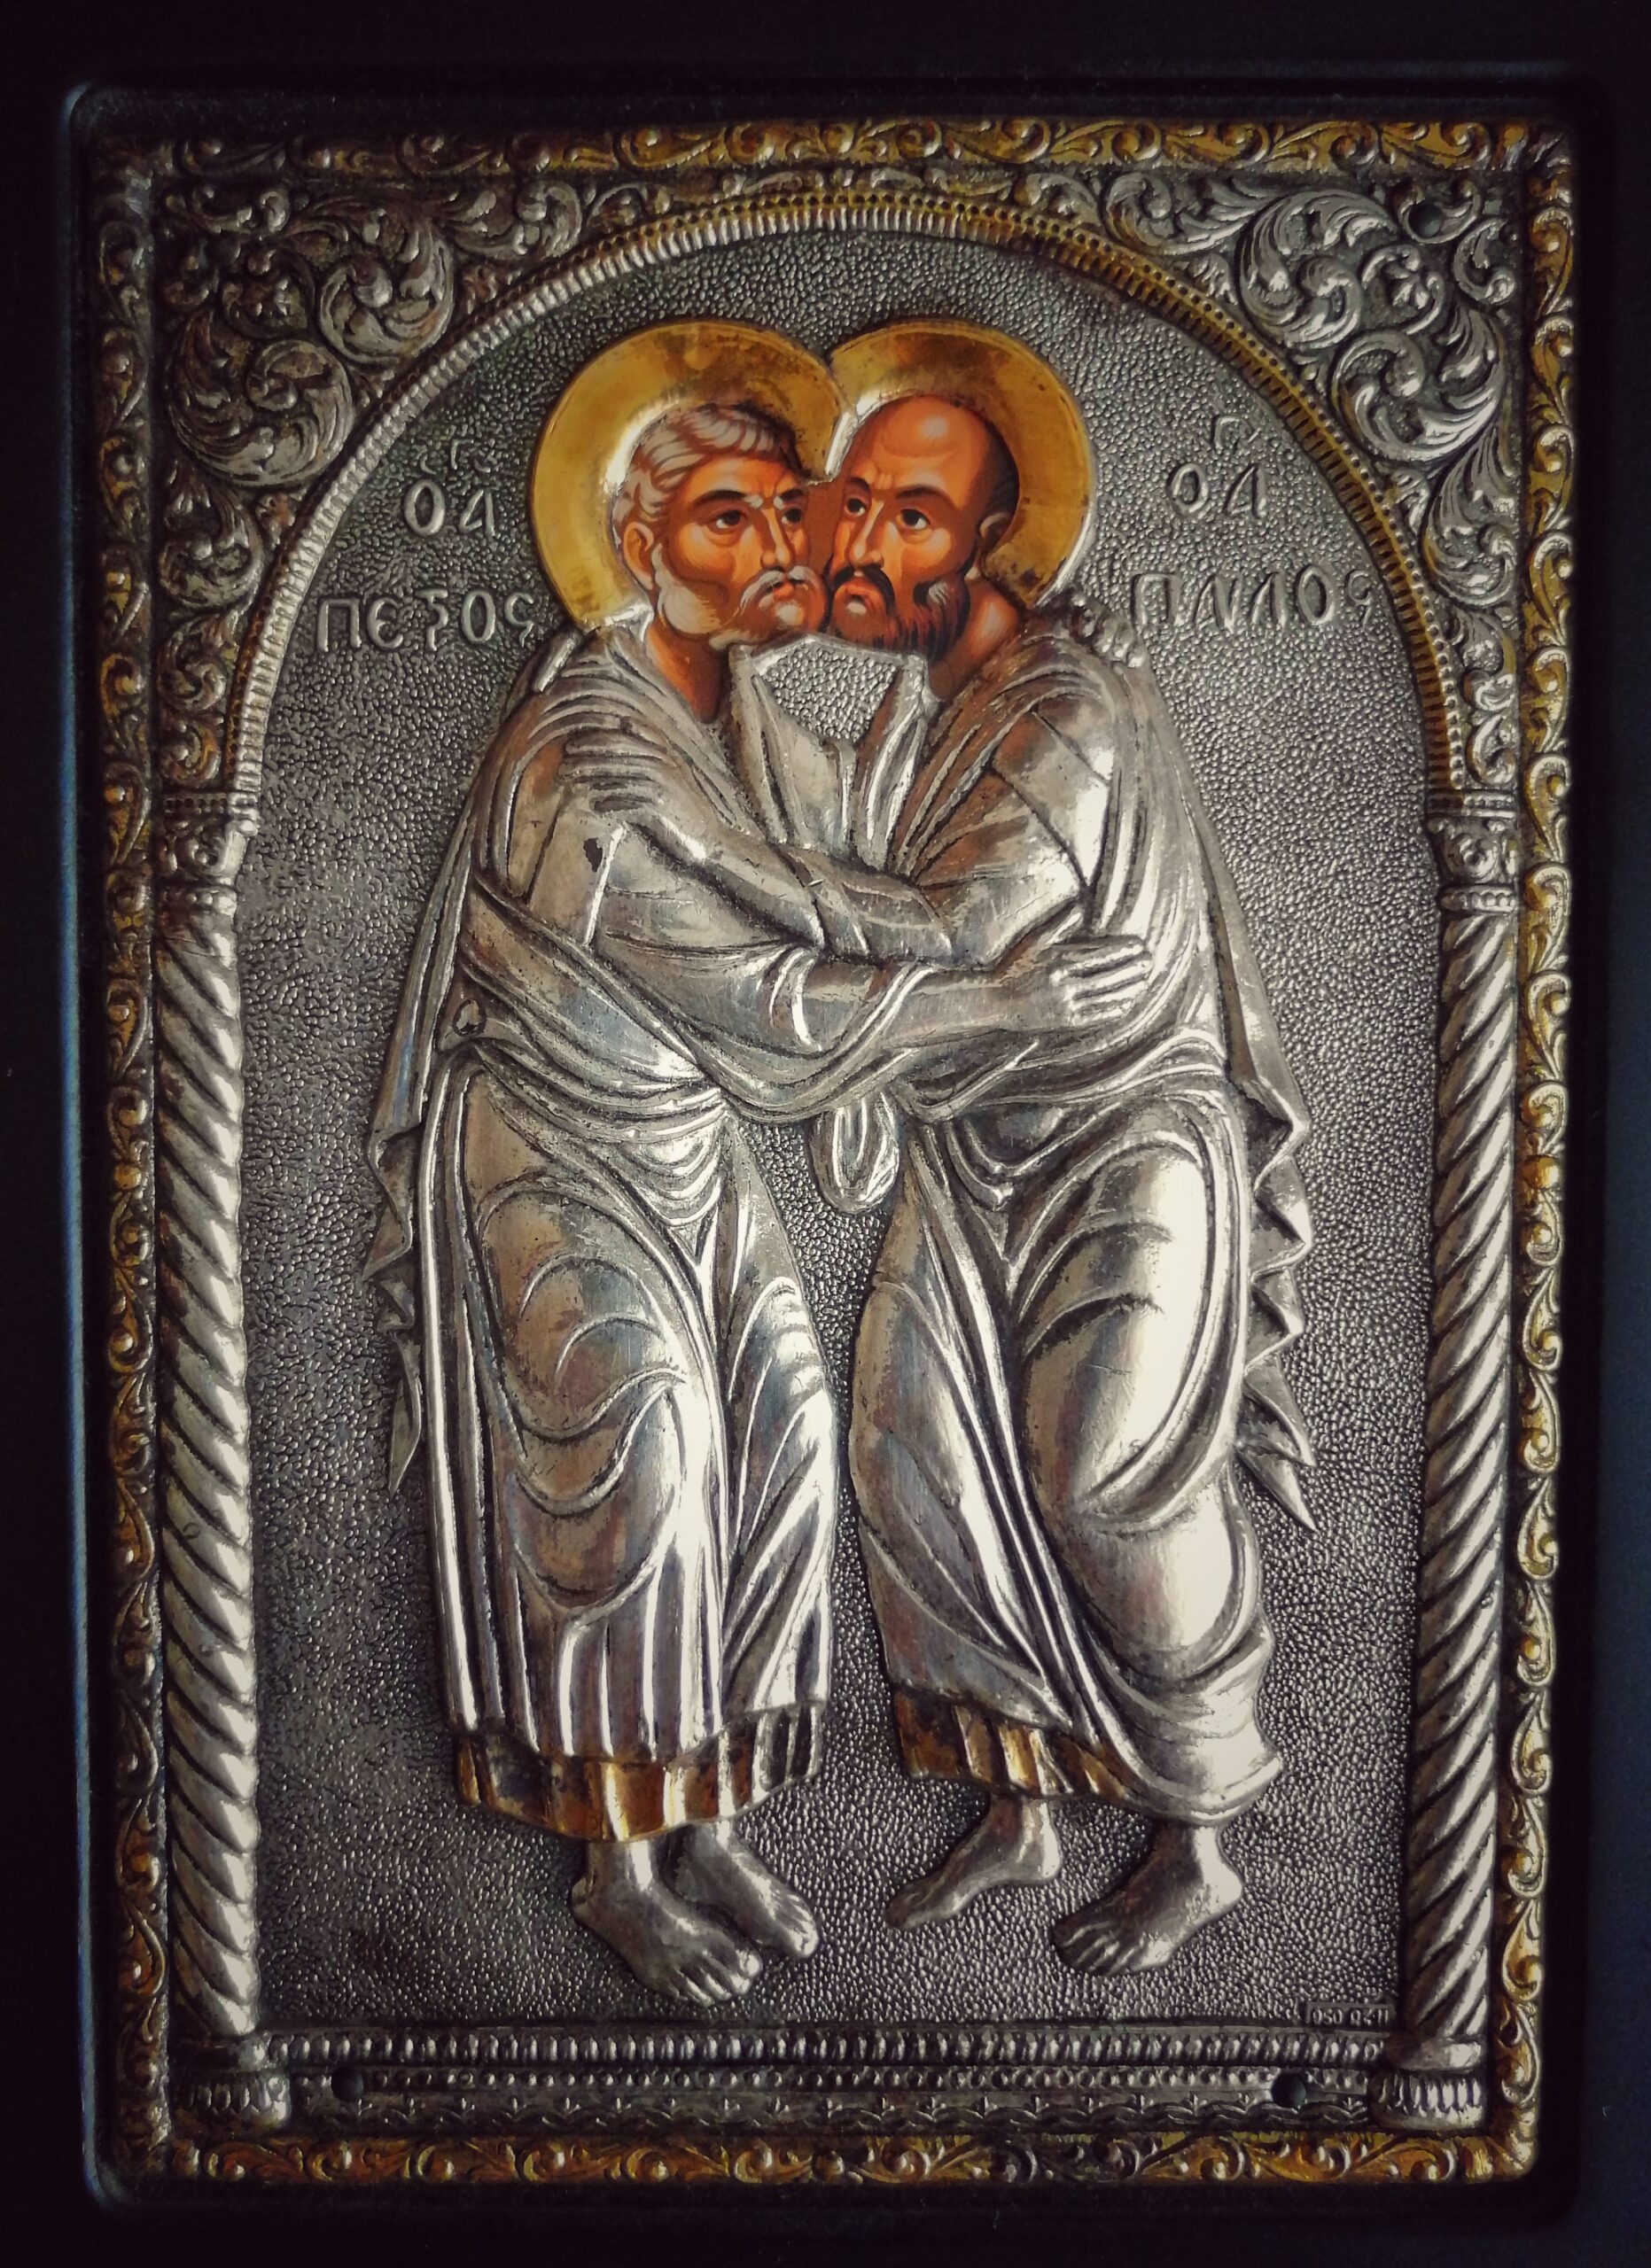 Sfinții Apostoli Petru și Pavel